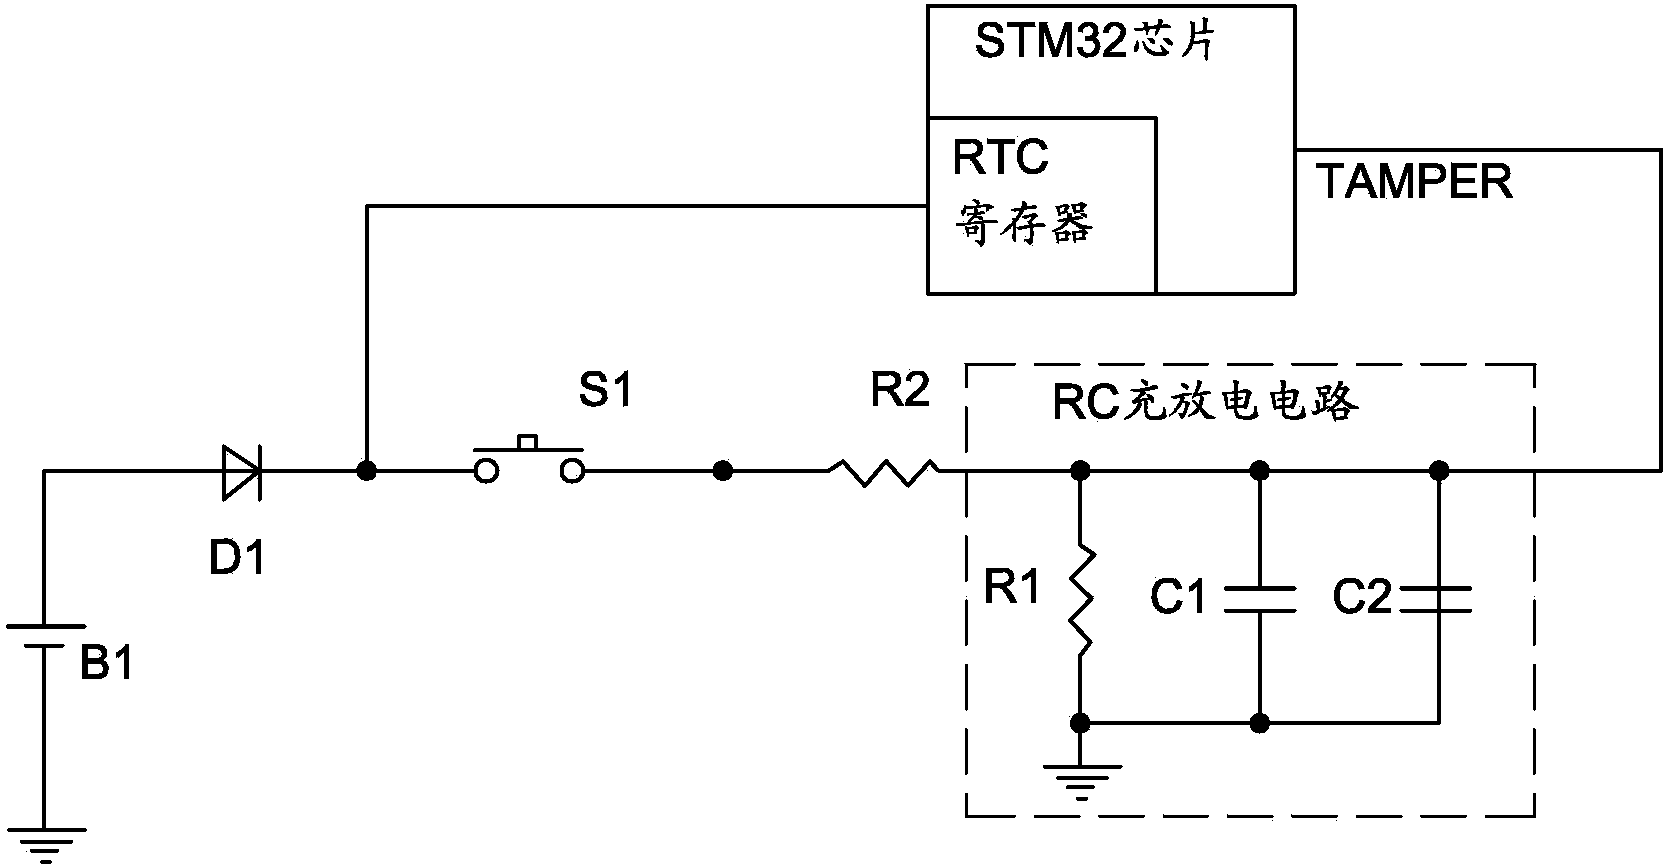 Tamper circuit based on STM32 chip